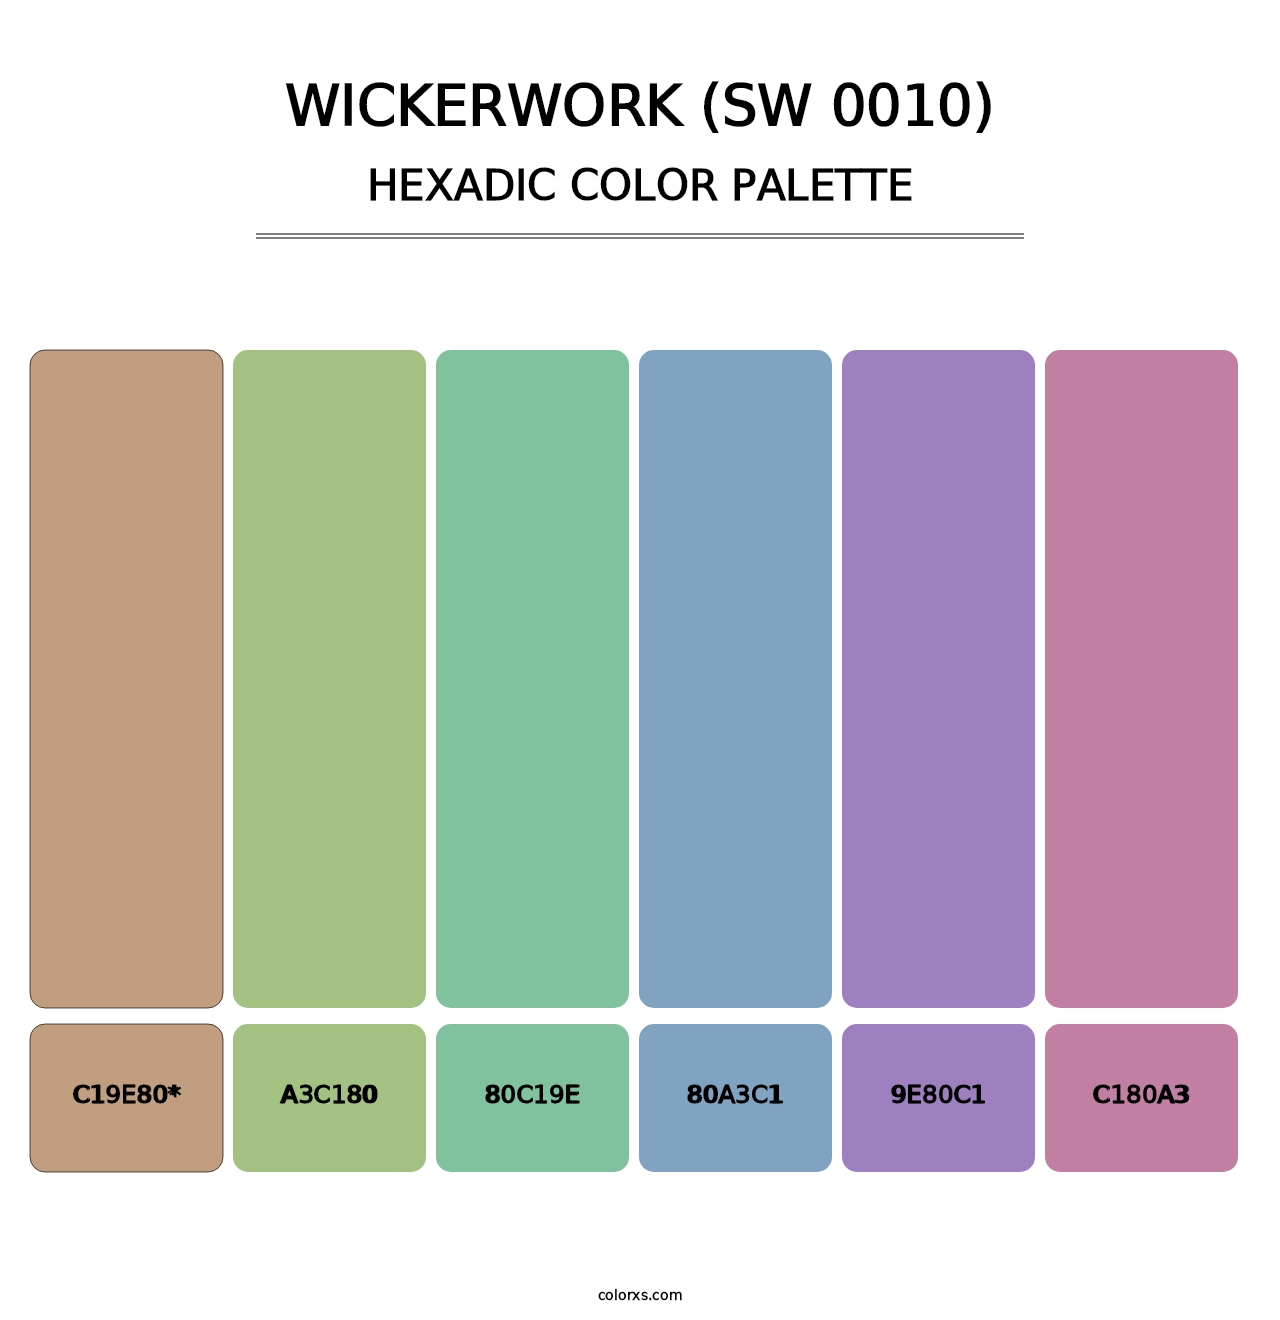 Wickerwork (SW 0010) - Hexadic Color Palette